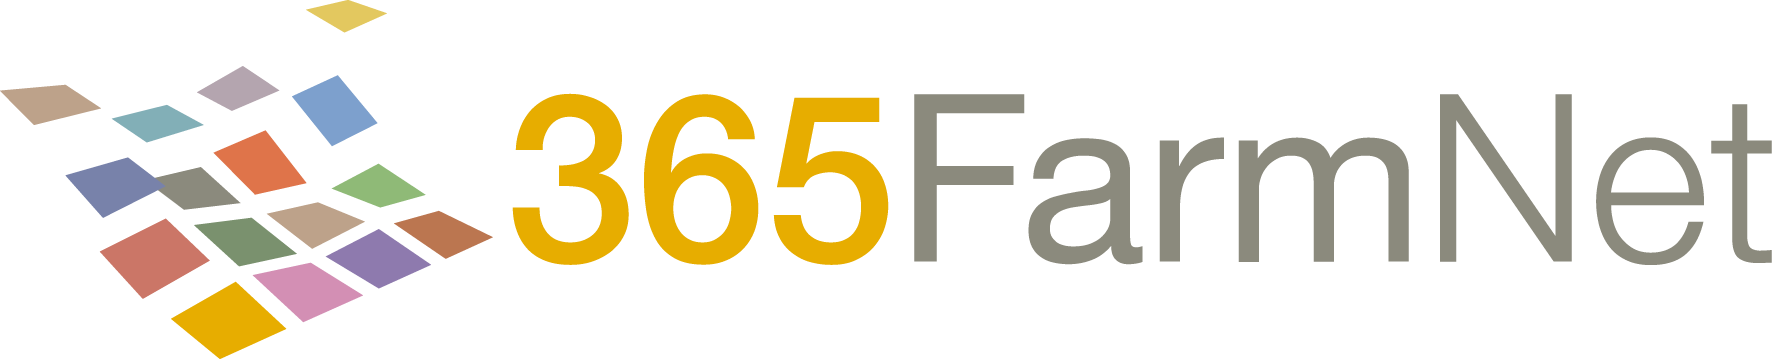 365 FarmNet